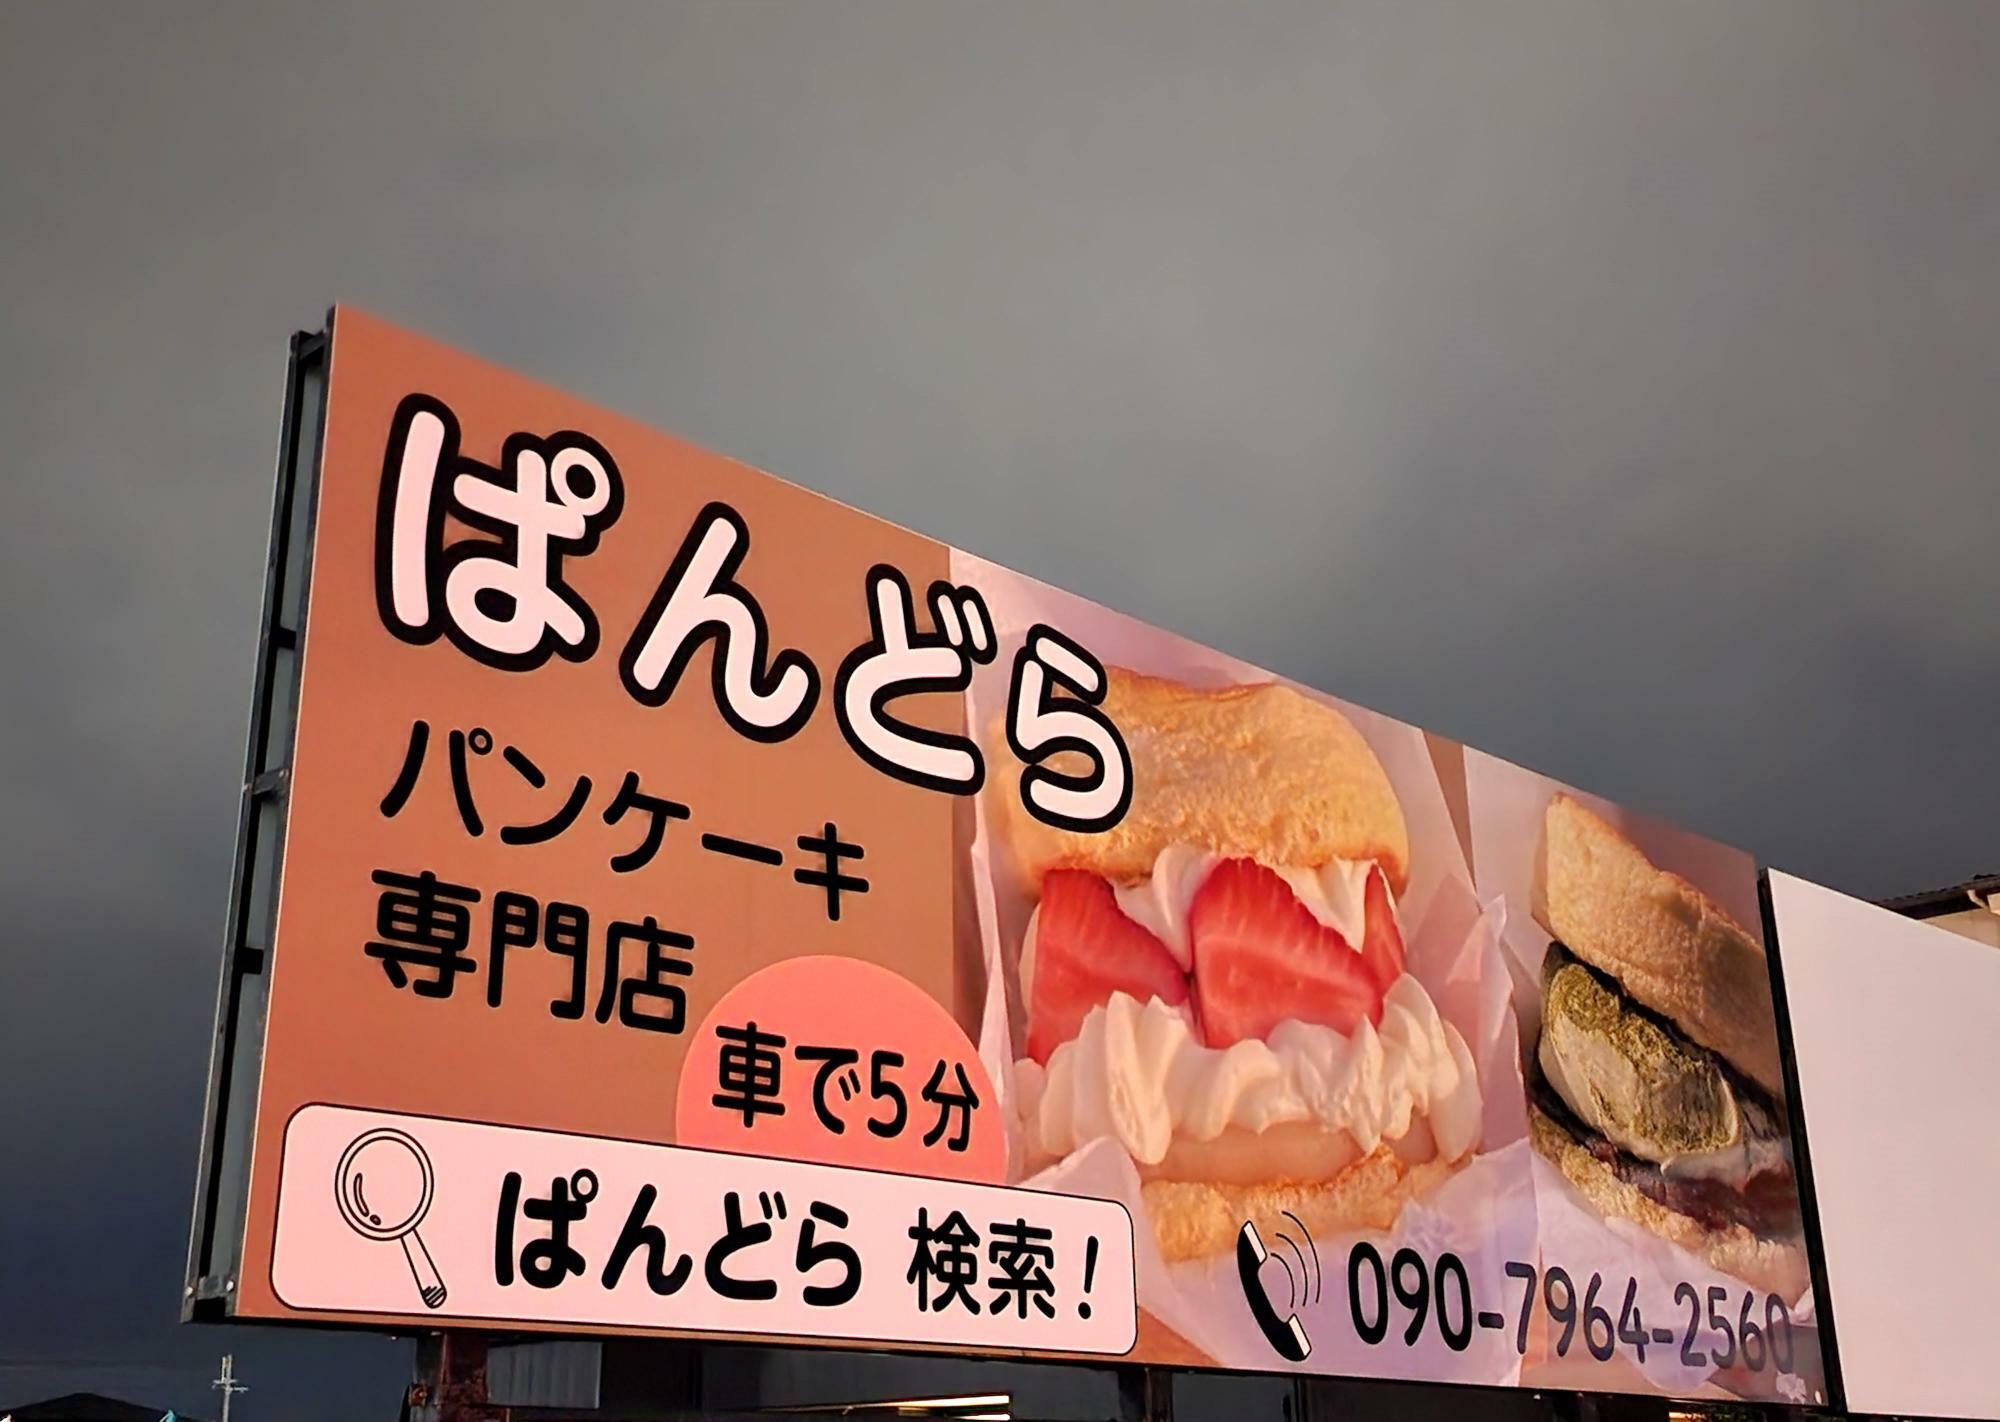 パンケーキ専門店「ぱんどら」看板。